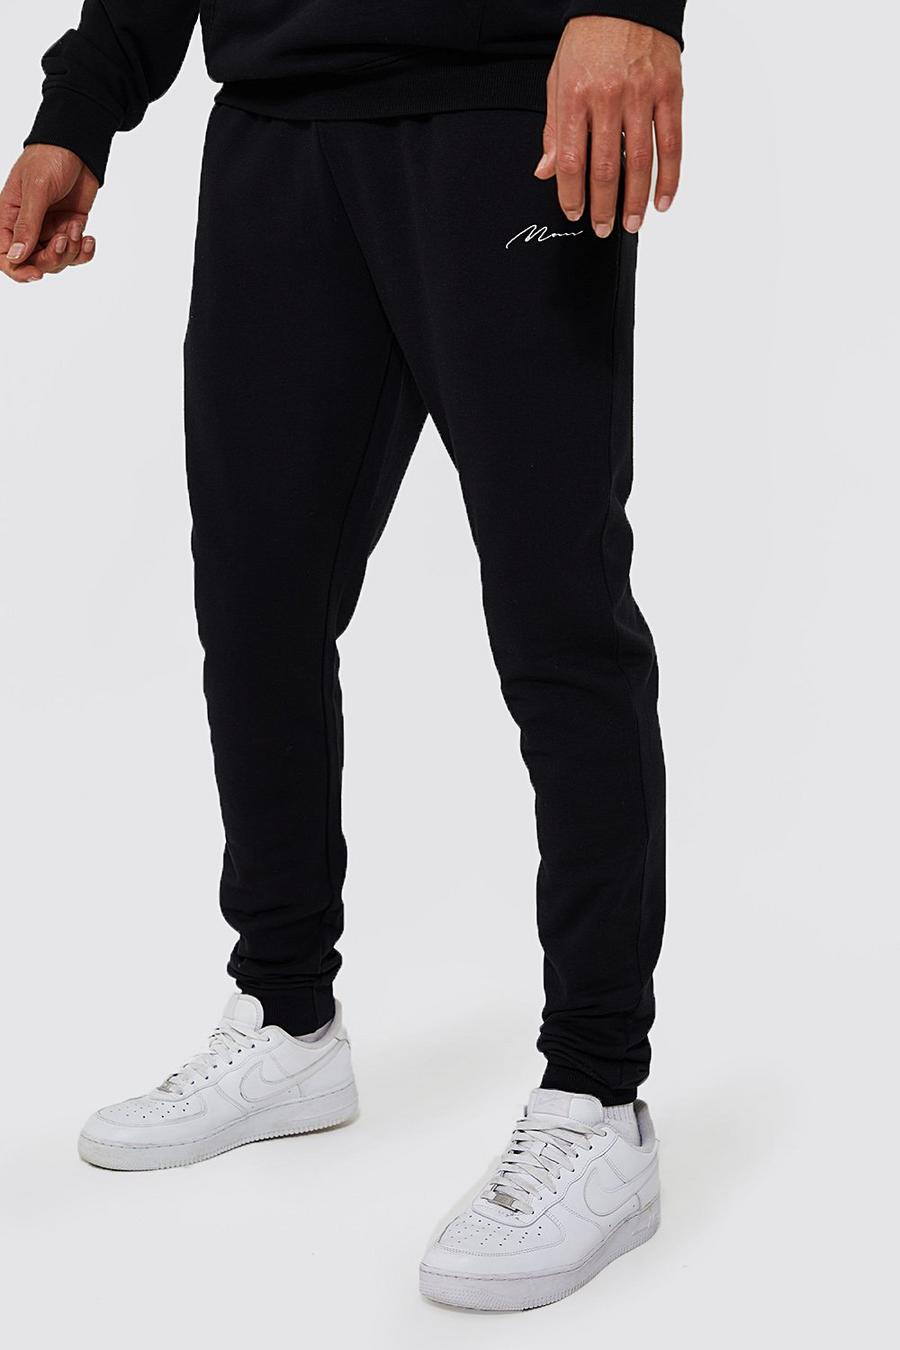 Pantalón deportivo Tall pitillo de tela jersey con algodón ecológico, Black negro